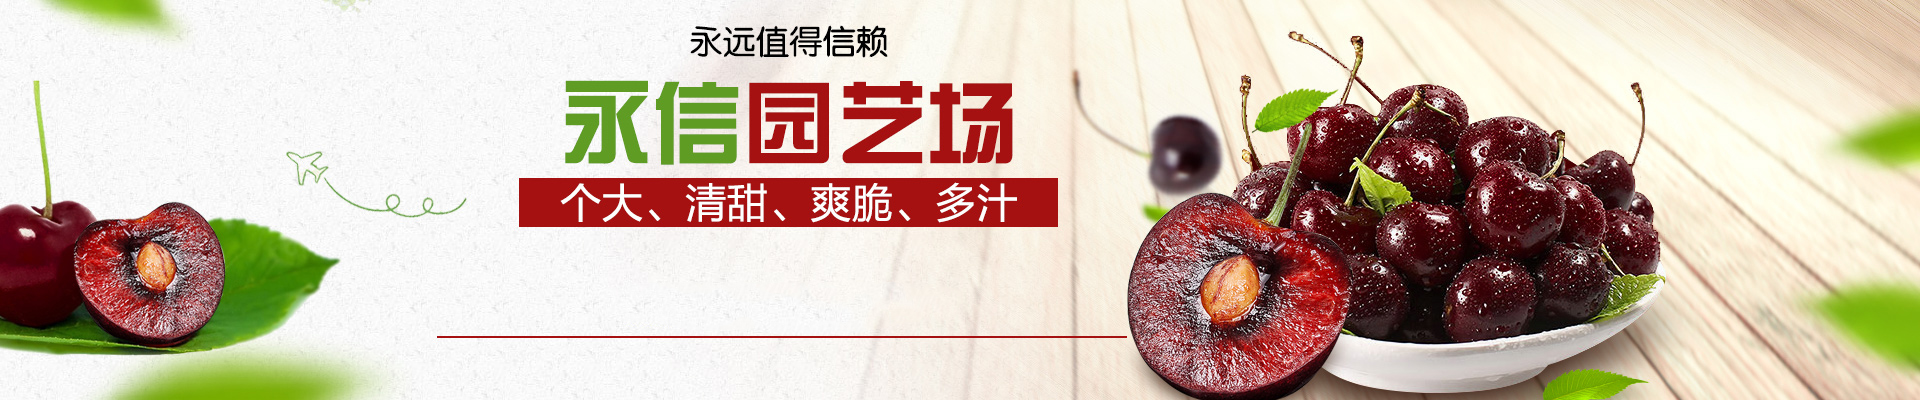 妙香7号草莓苗市场报价 妙香7号草莓苗